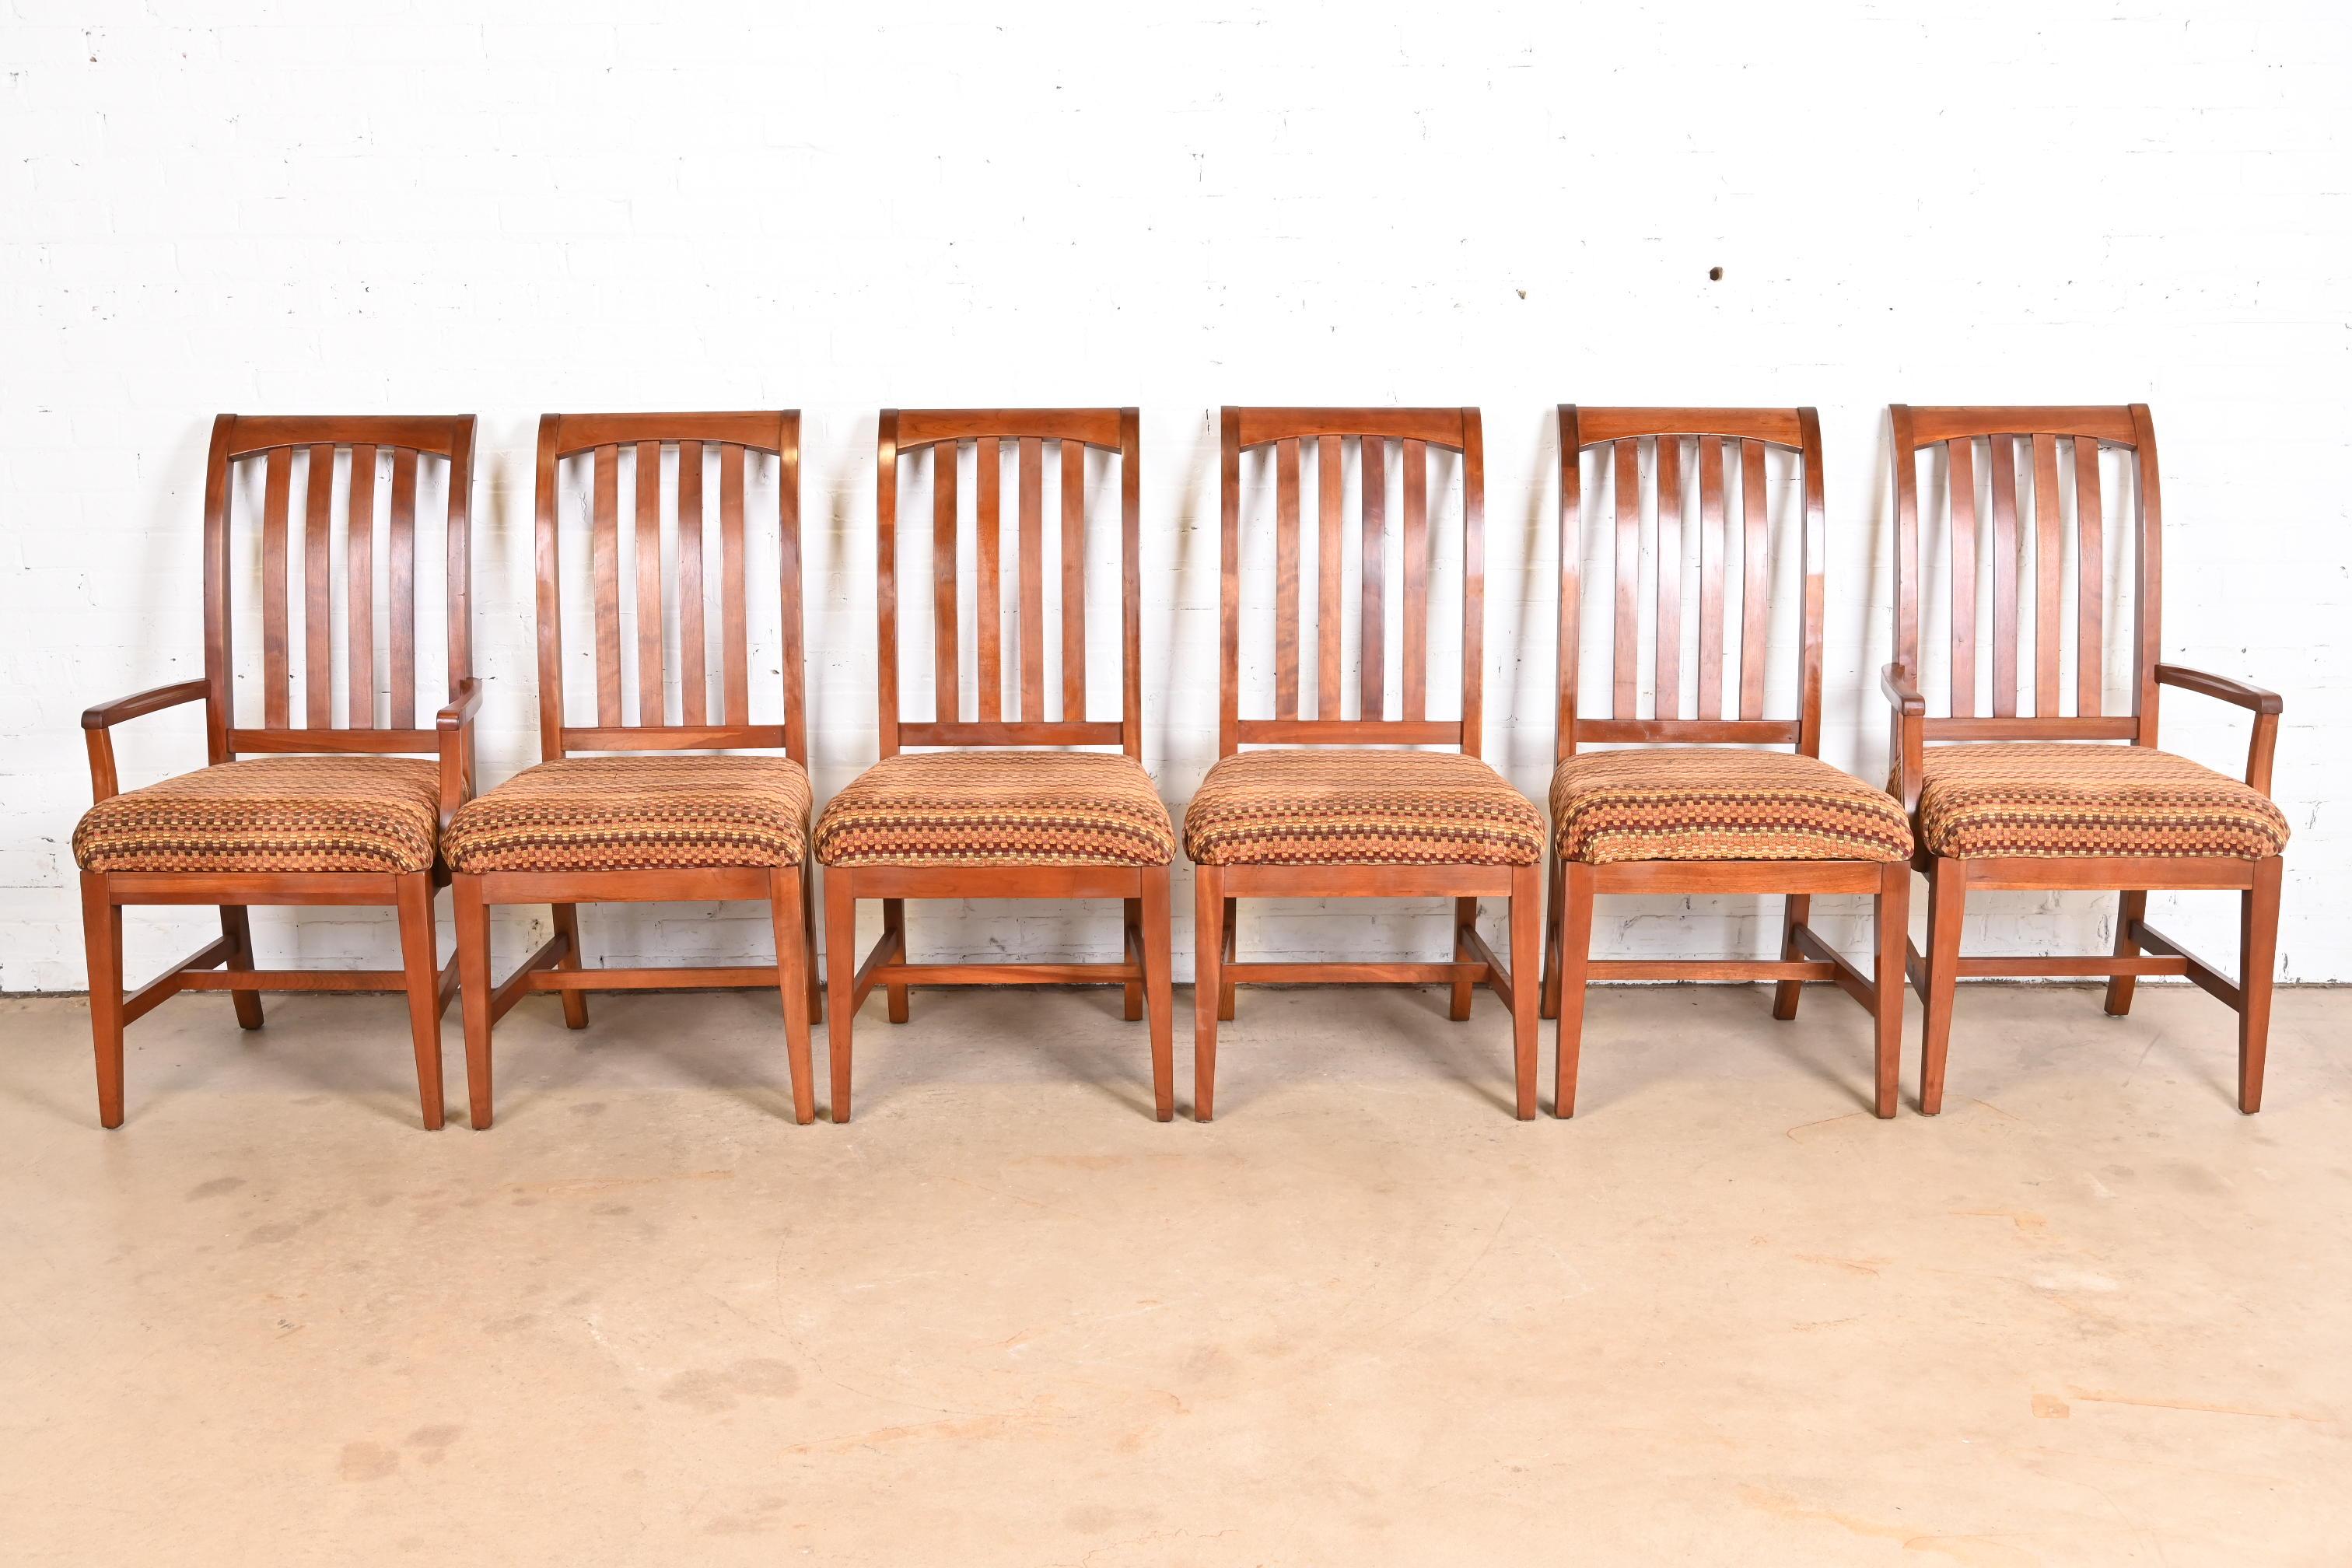 Un magnifique ensemble de six chaises de salle à manger de style Arts & Crafts ou Shakers

États-Unis, fin du 20e siècle

Bois massif de cerisier sculpté, avec sièges rembourrés.

Mesures :
Chaises d'appoint - 21,5 